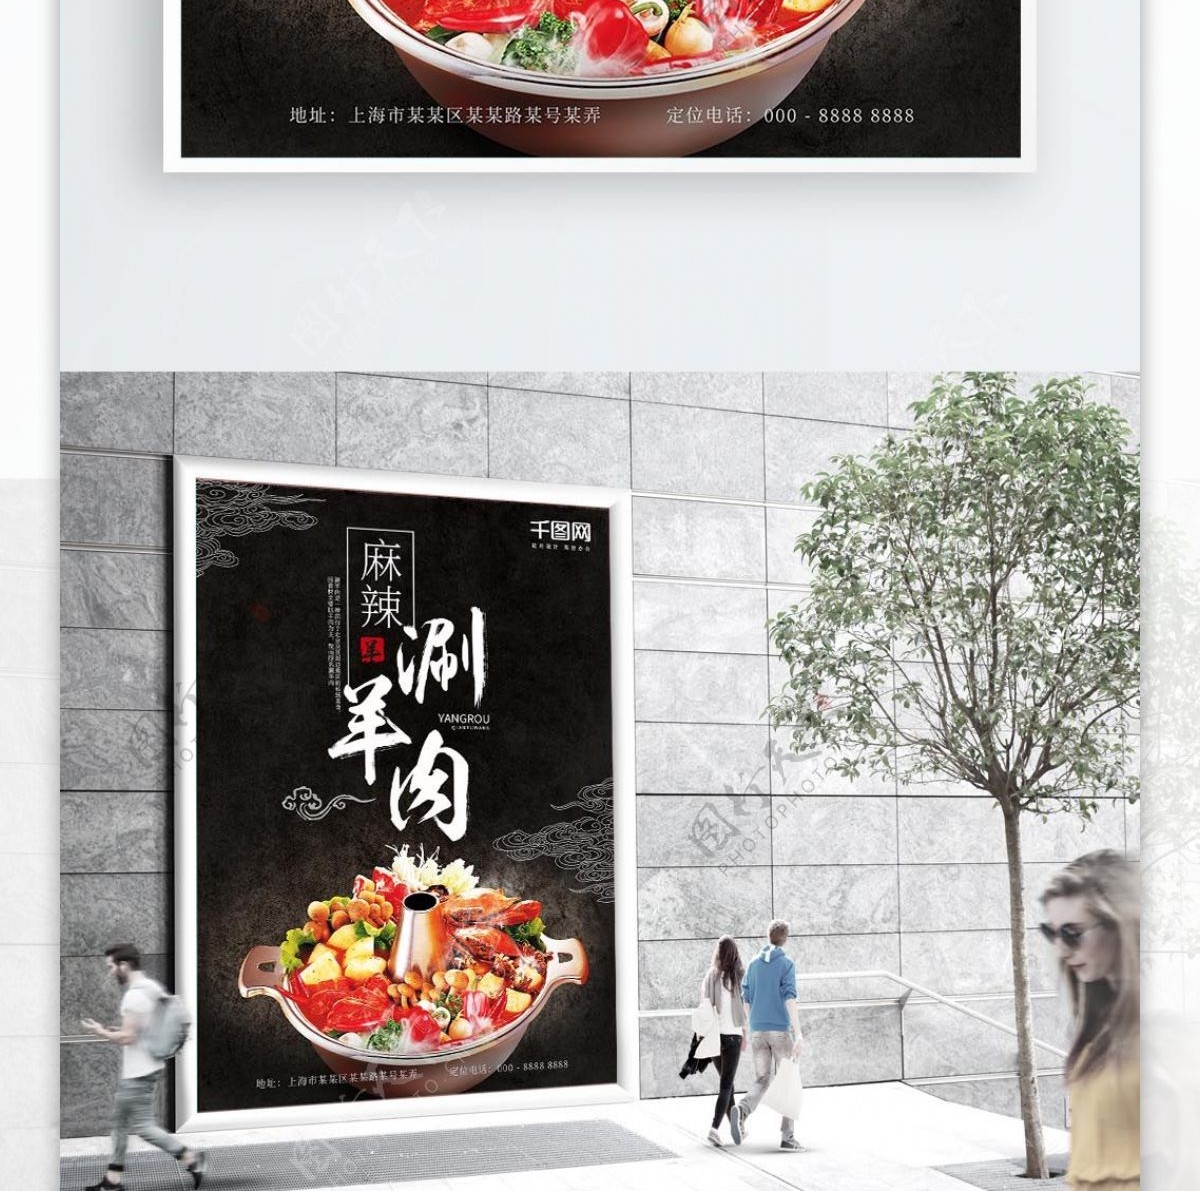 中式中国风麻辣涮羊肉美食海报